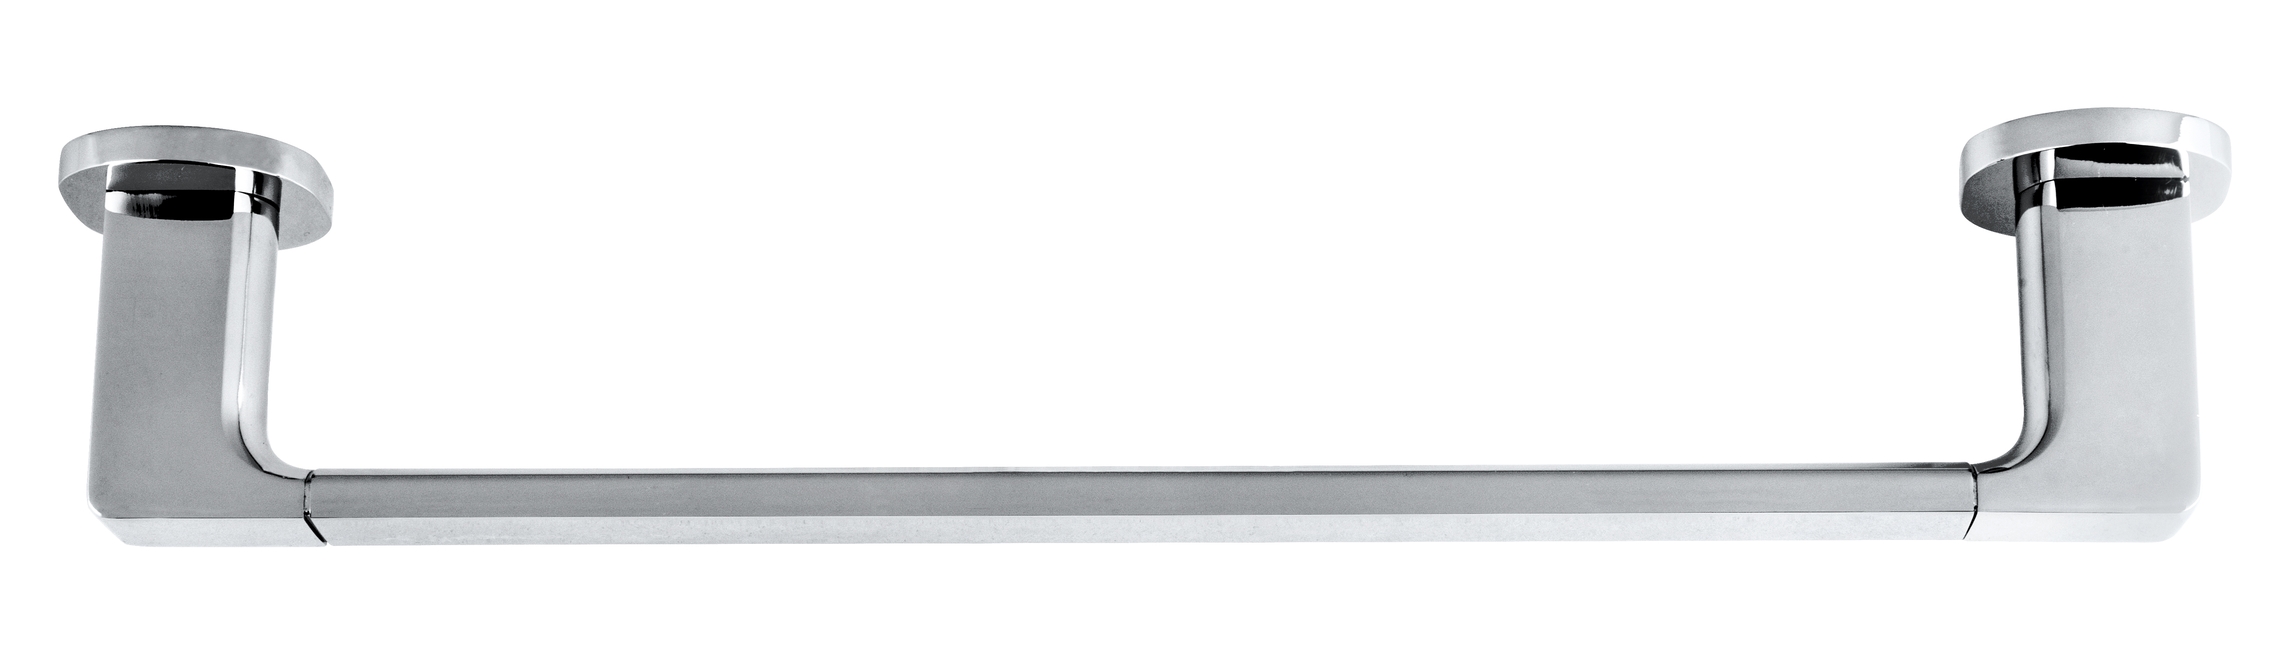 Wenko UV-Loc® Badetuchstange Uno Maribor 43,5 x 5 x 7,5 cm, silber  glänzend. Befestigen ohne Bohren | Uno | 43,5 x 5 x 7,5 cm | 422590